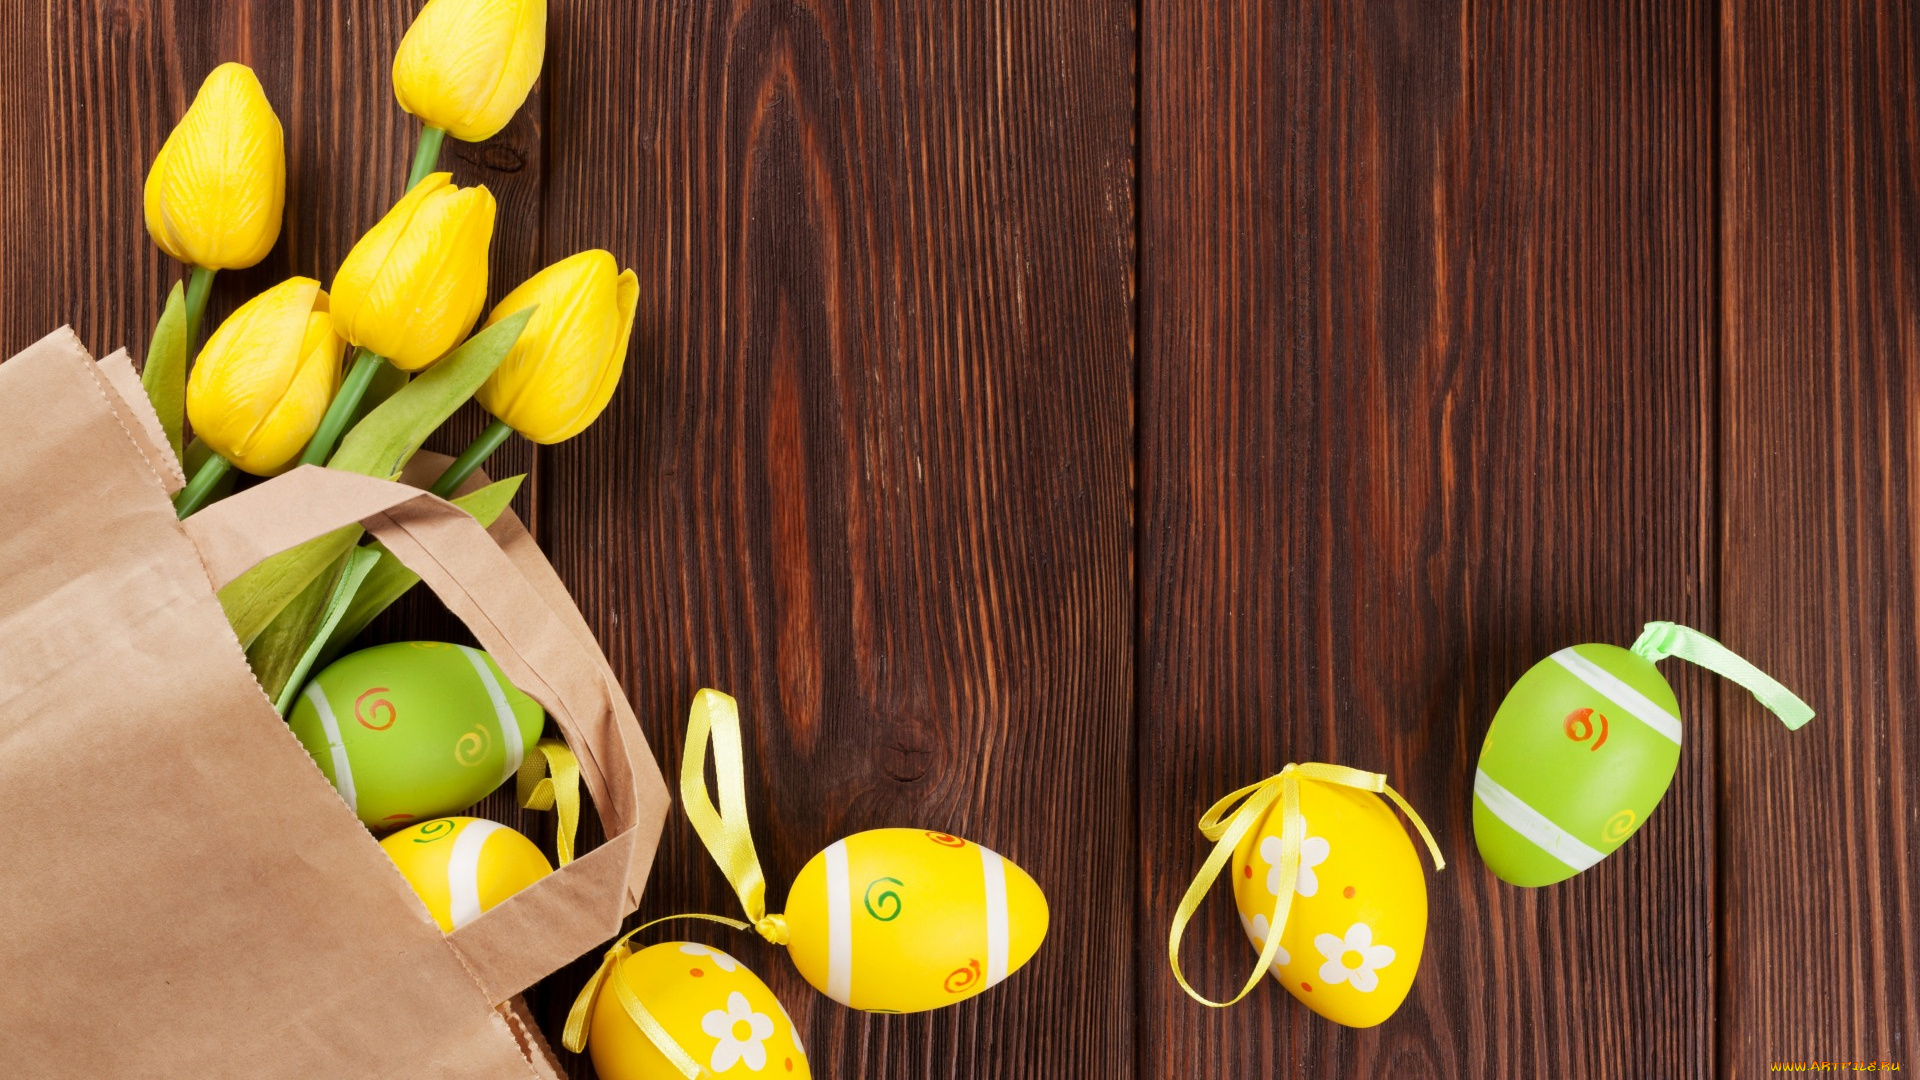 праздничные, пасха, decoration, happy, spring, wood, yellow, тюльпаны, easter, eggs, tender, tulips